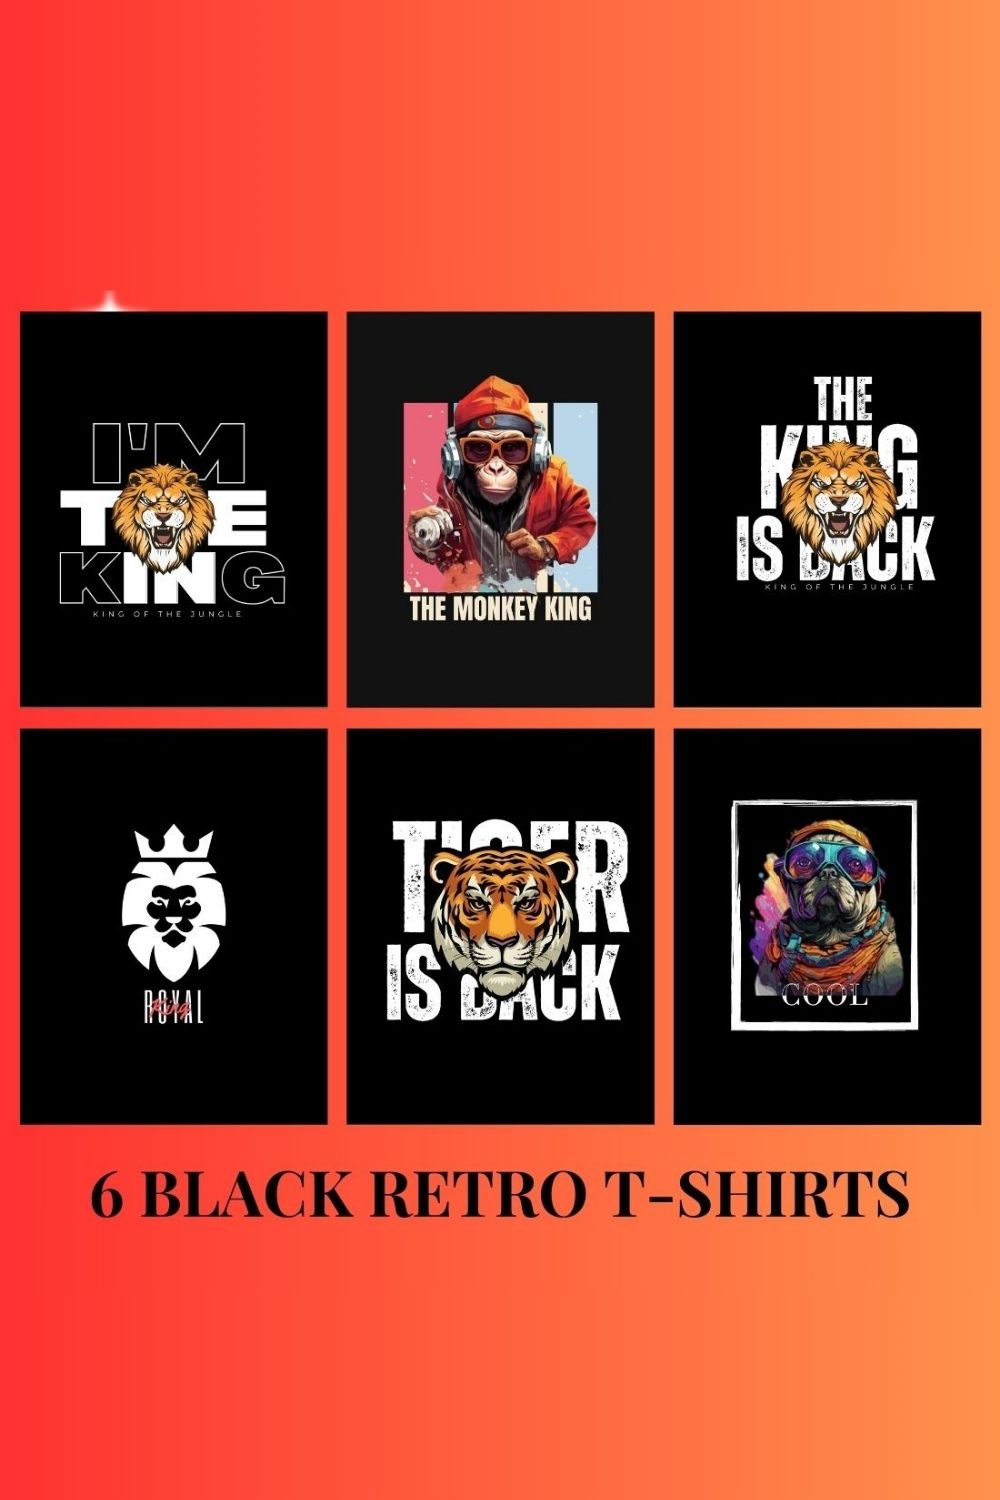 Black Retro T-Shirt pinterest preview image.